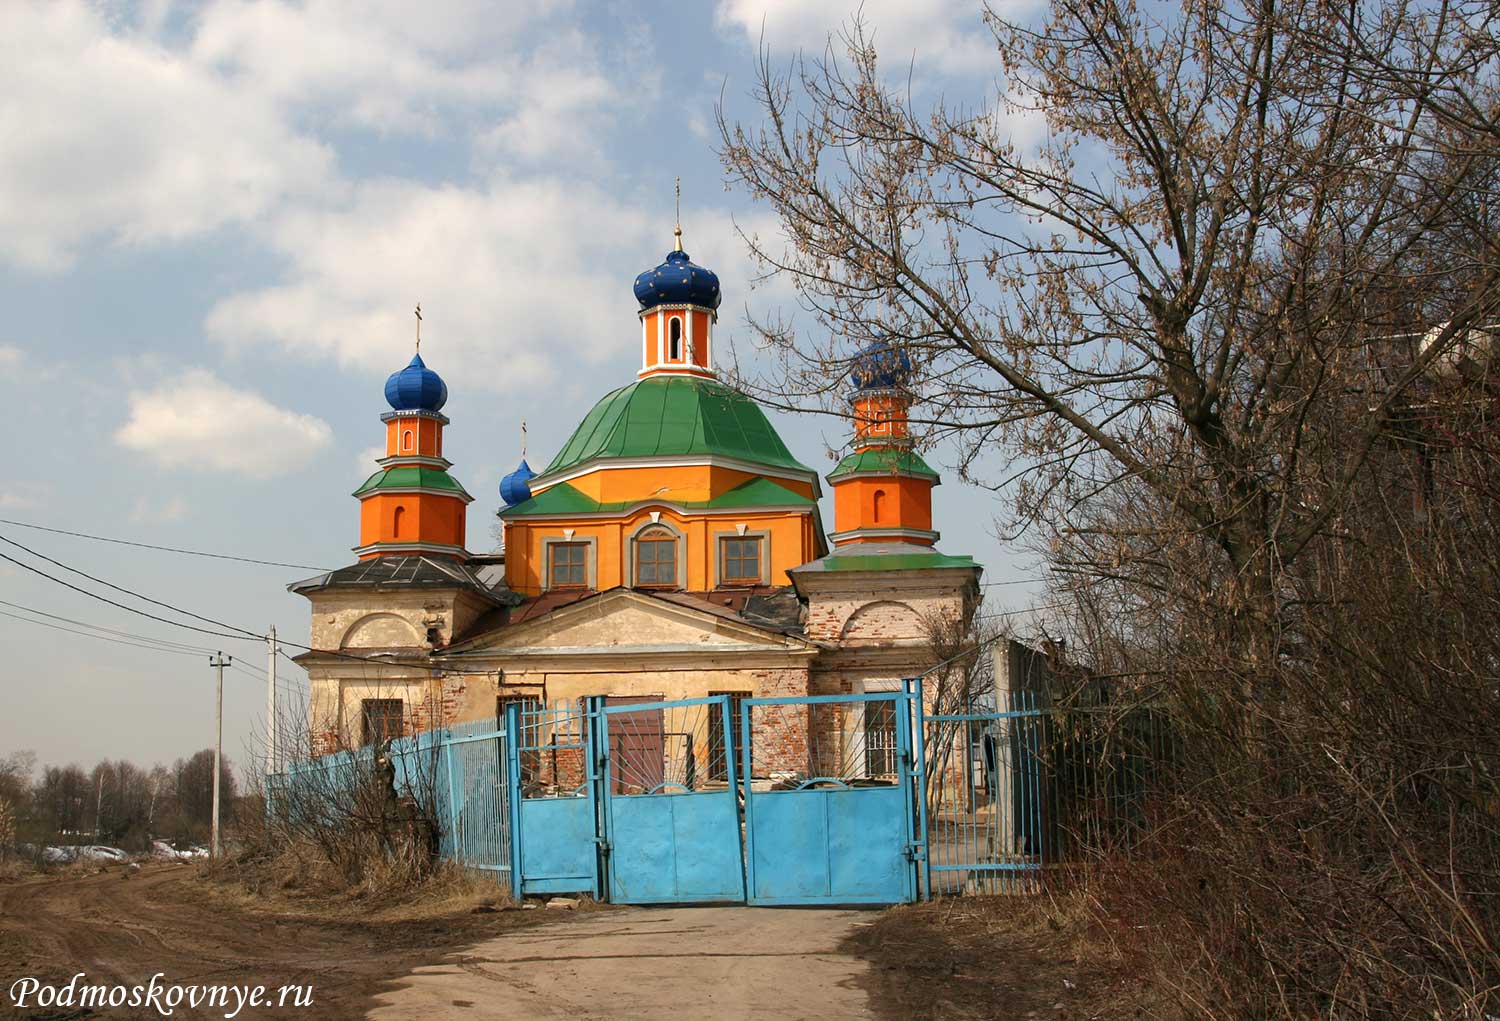 Успенская церковь усадьбы «Успенское-Бабарыкино» (Домодедово)